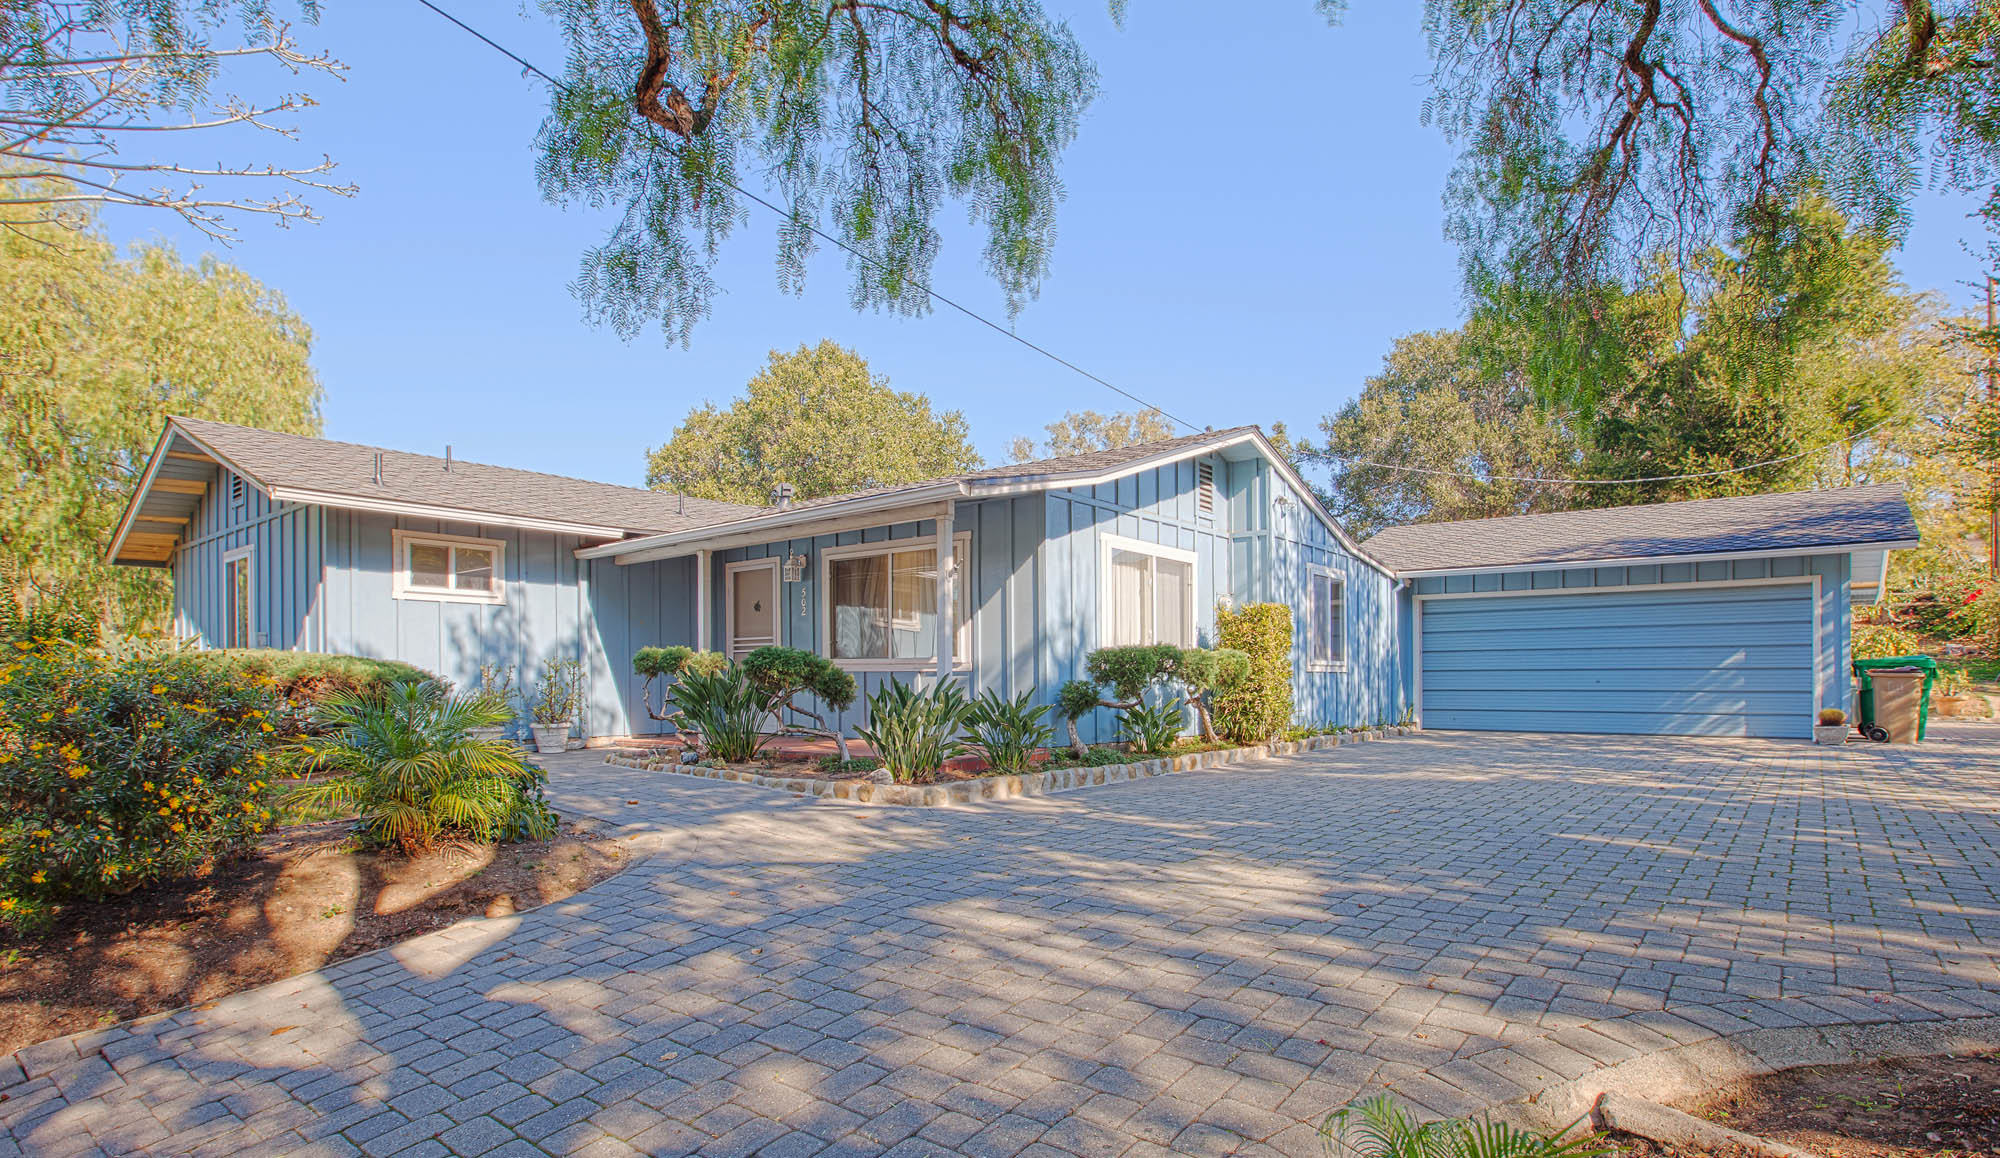 502 N Turnpike Home for Sale - Santa Barbara